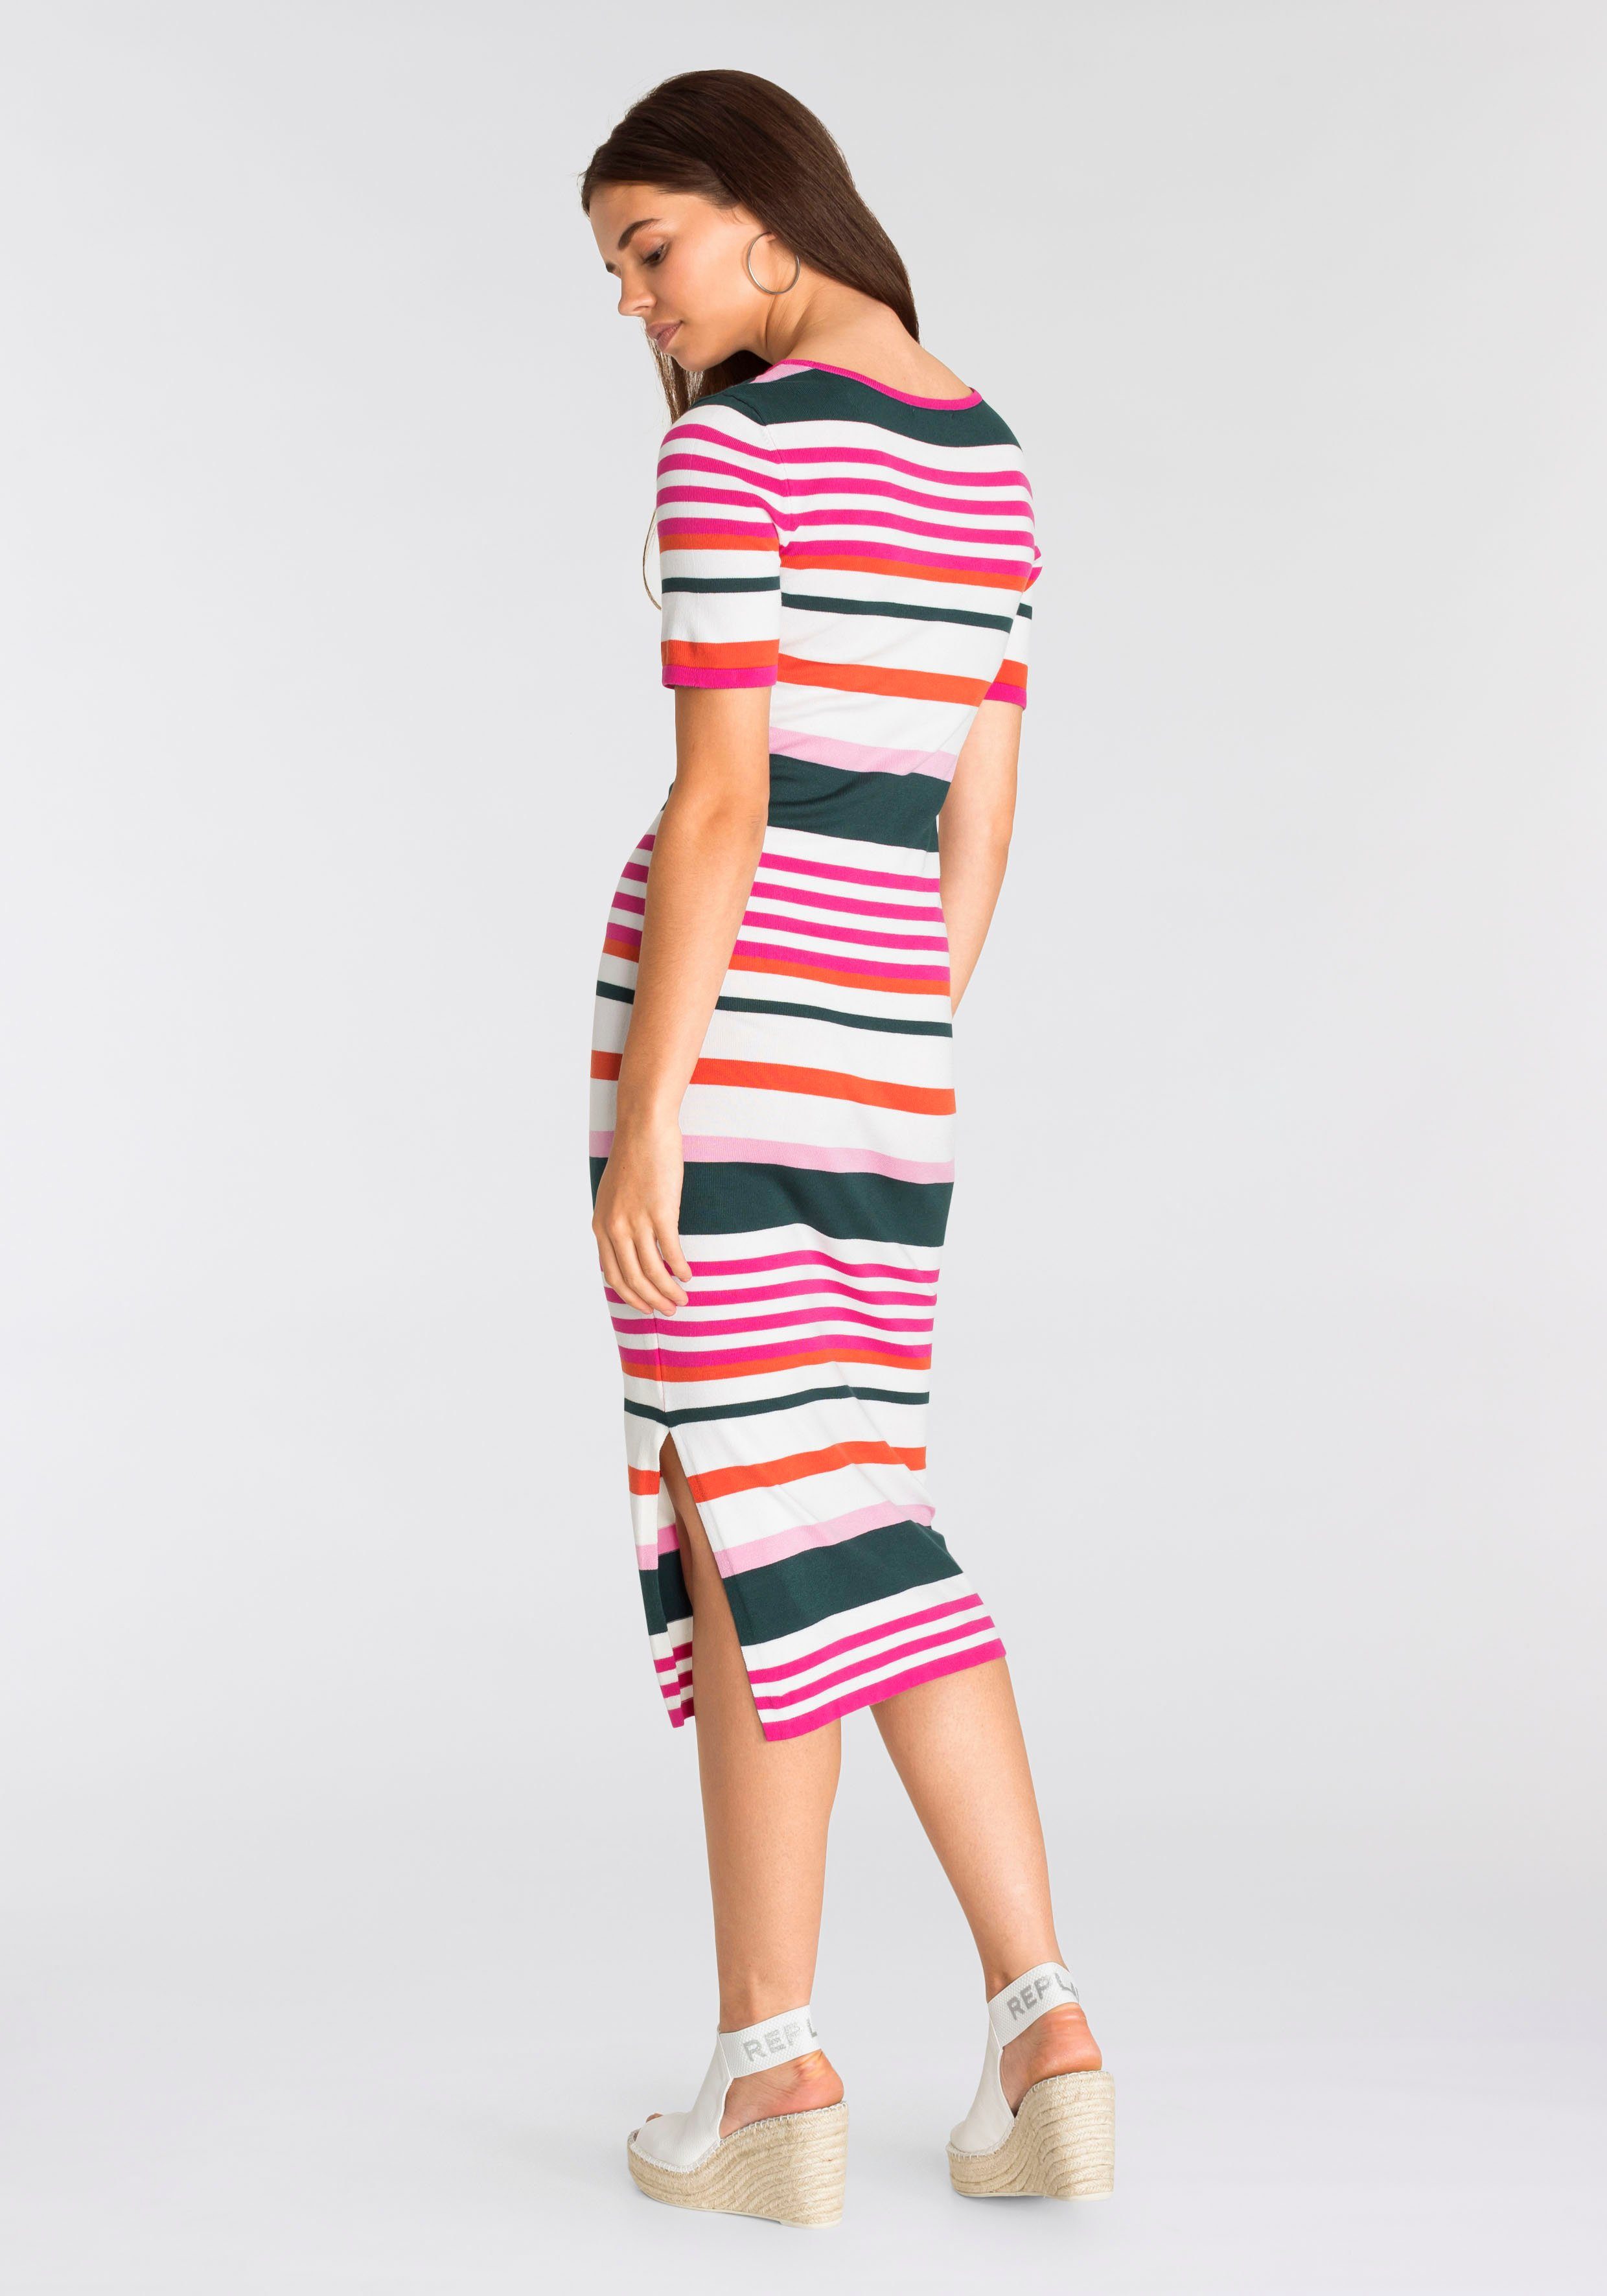 Damen Kleider AJC Strickkleid im Multicolor-Streifendesign - NEUE KOLLEKTION